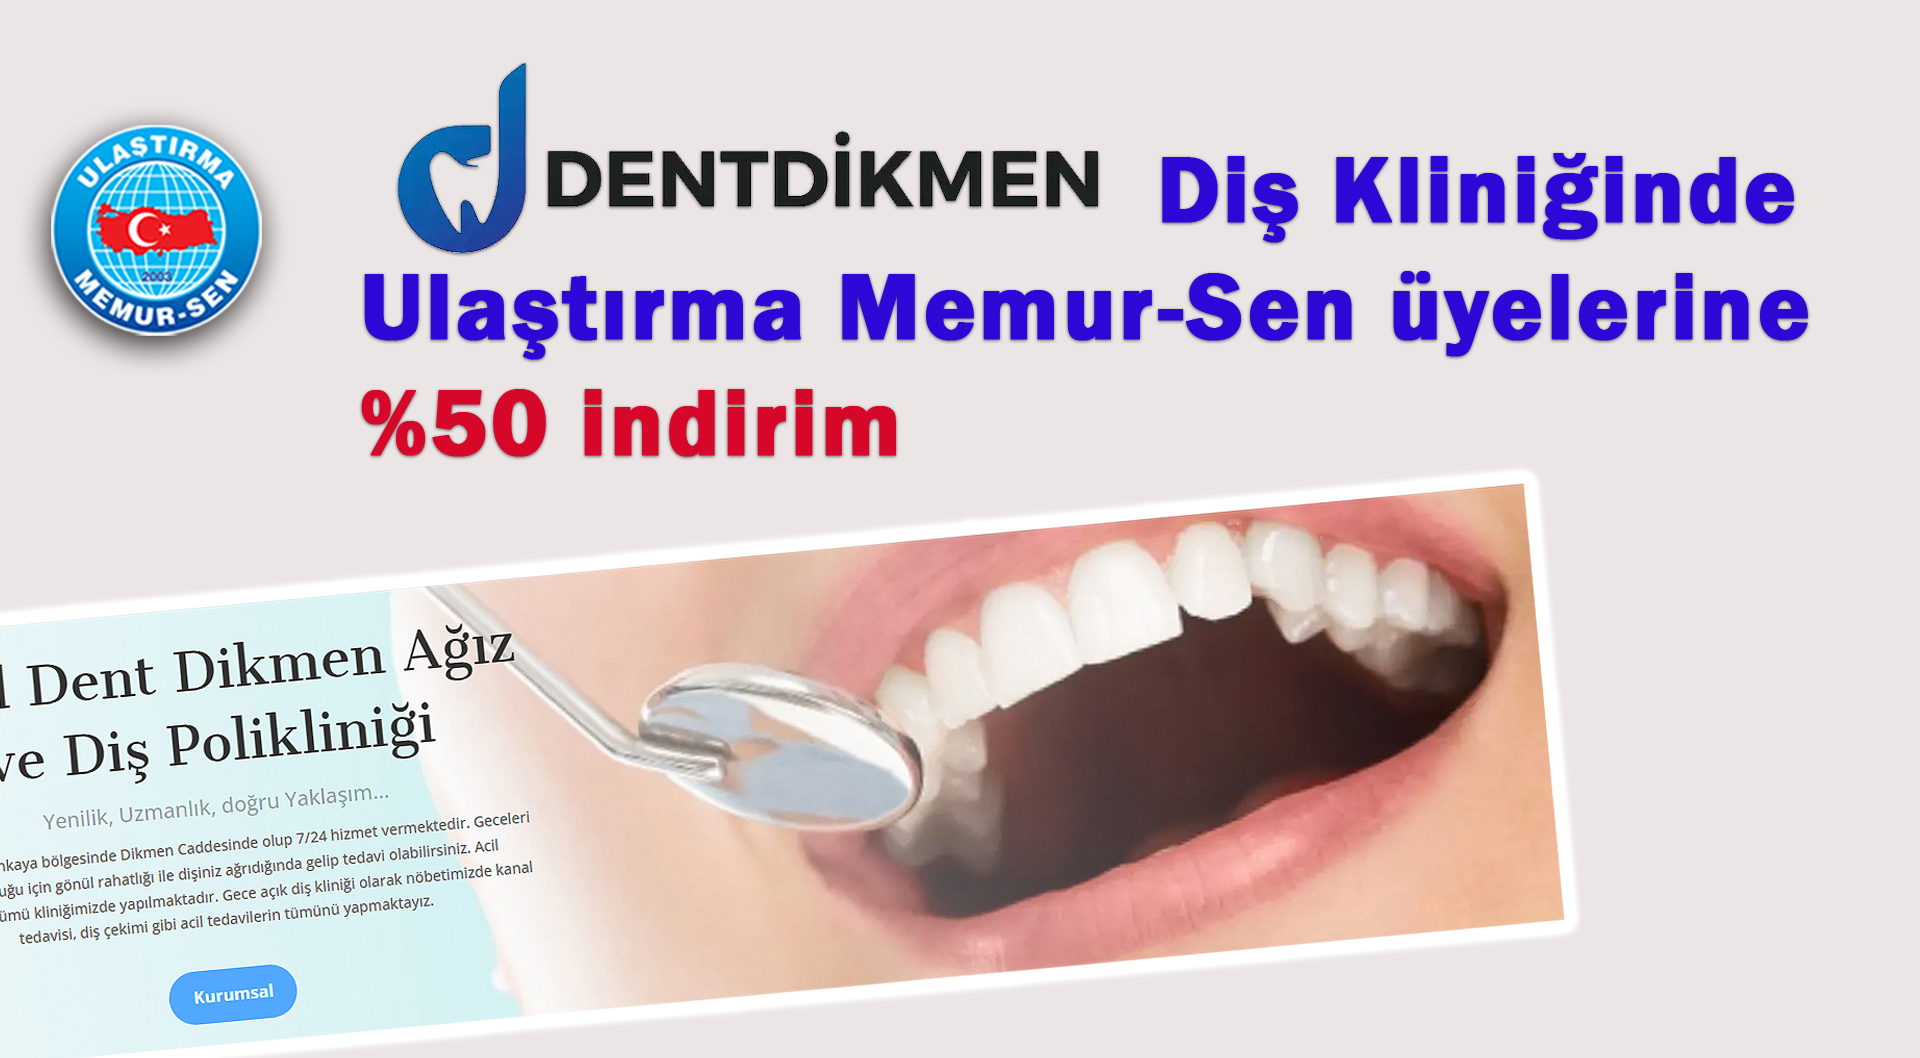 Dent Dikmen Diş Kliniğinde, Ulaştırma Memur-Sen üyelerine %50 indirim